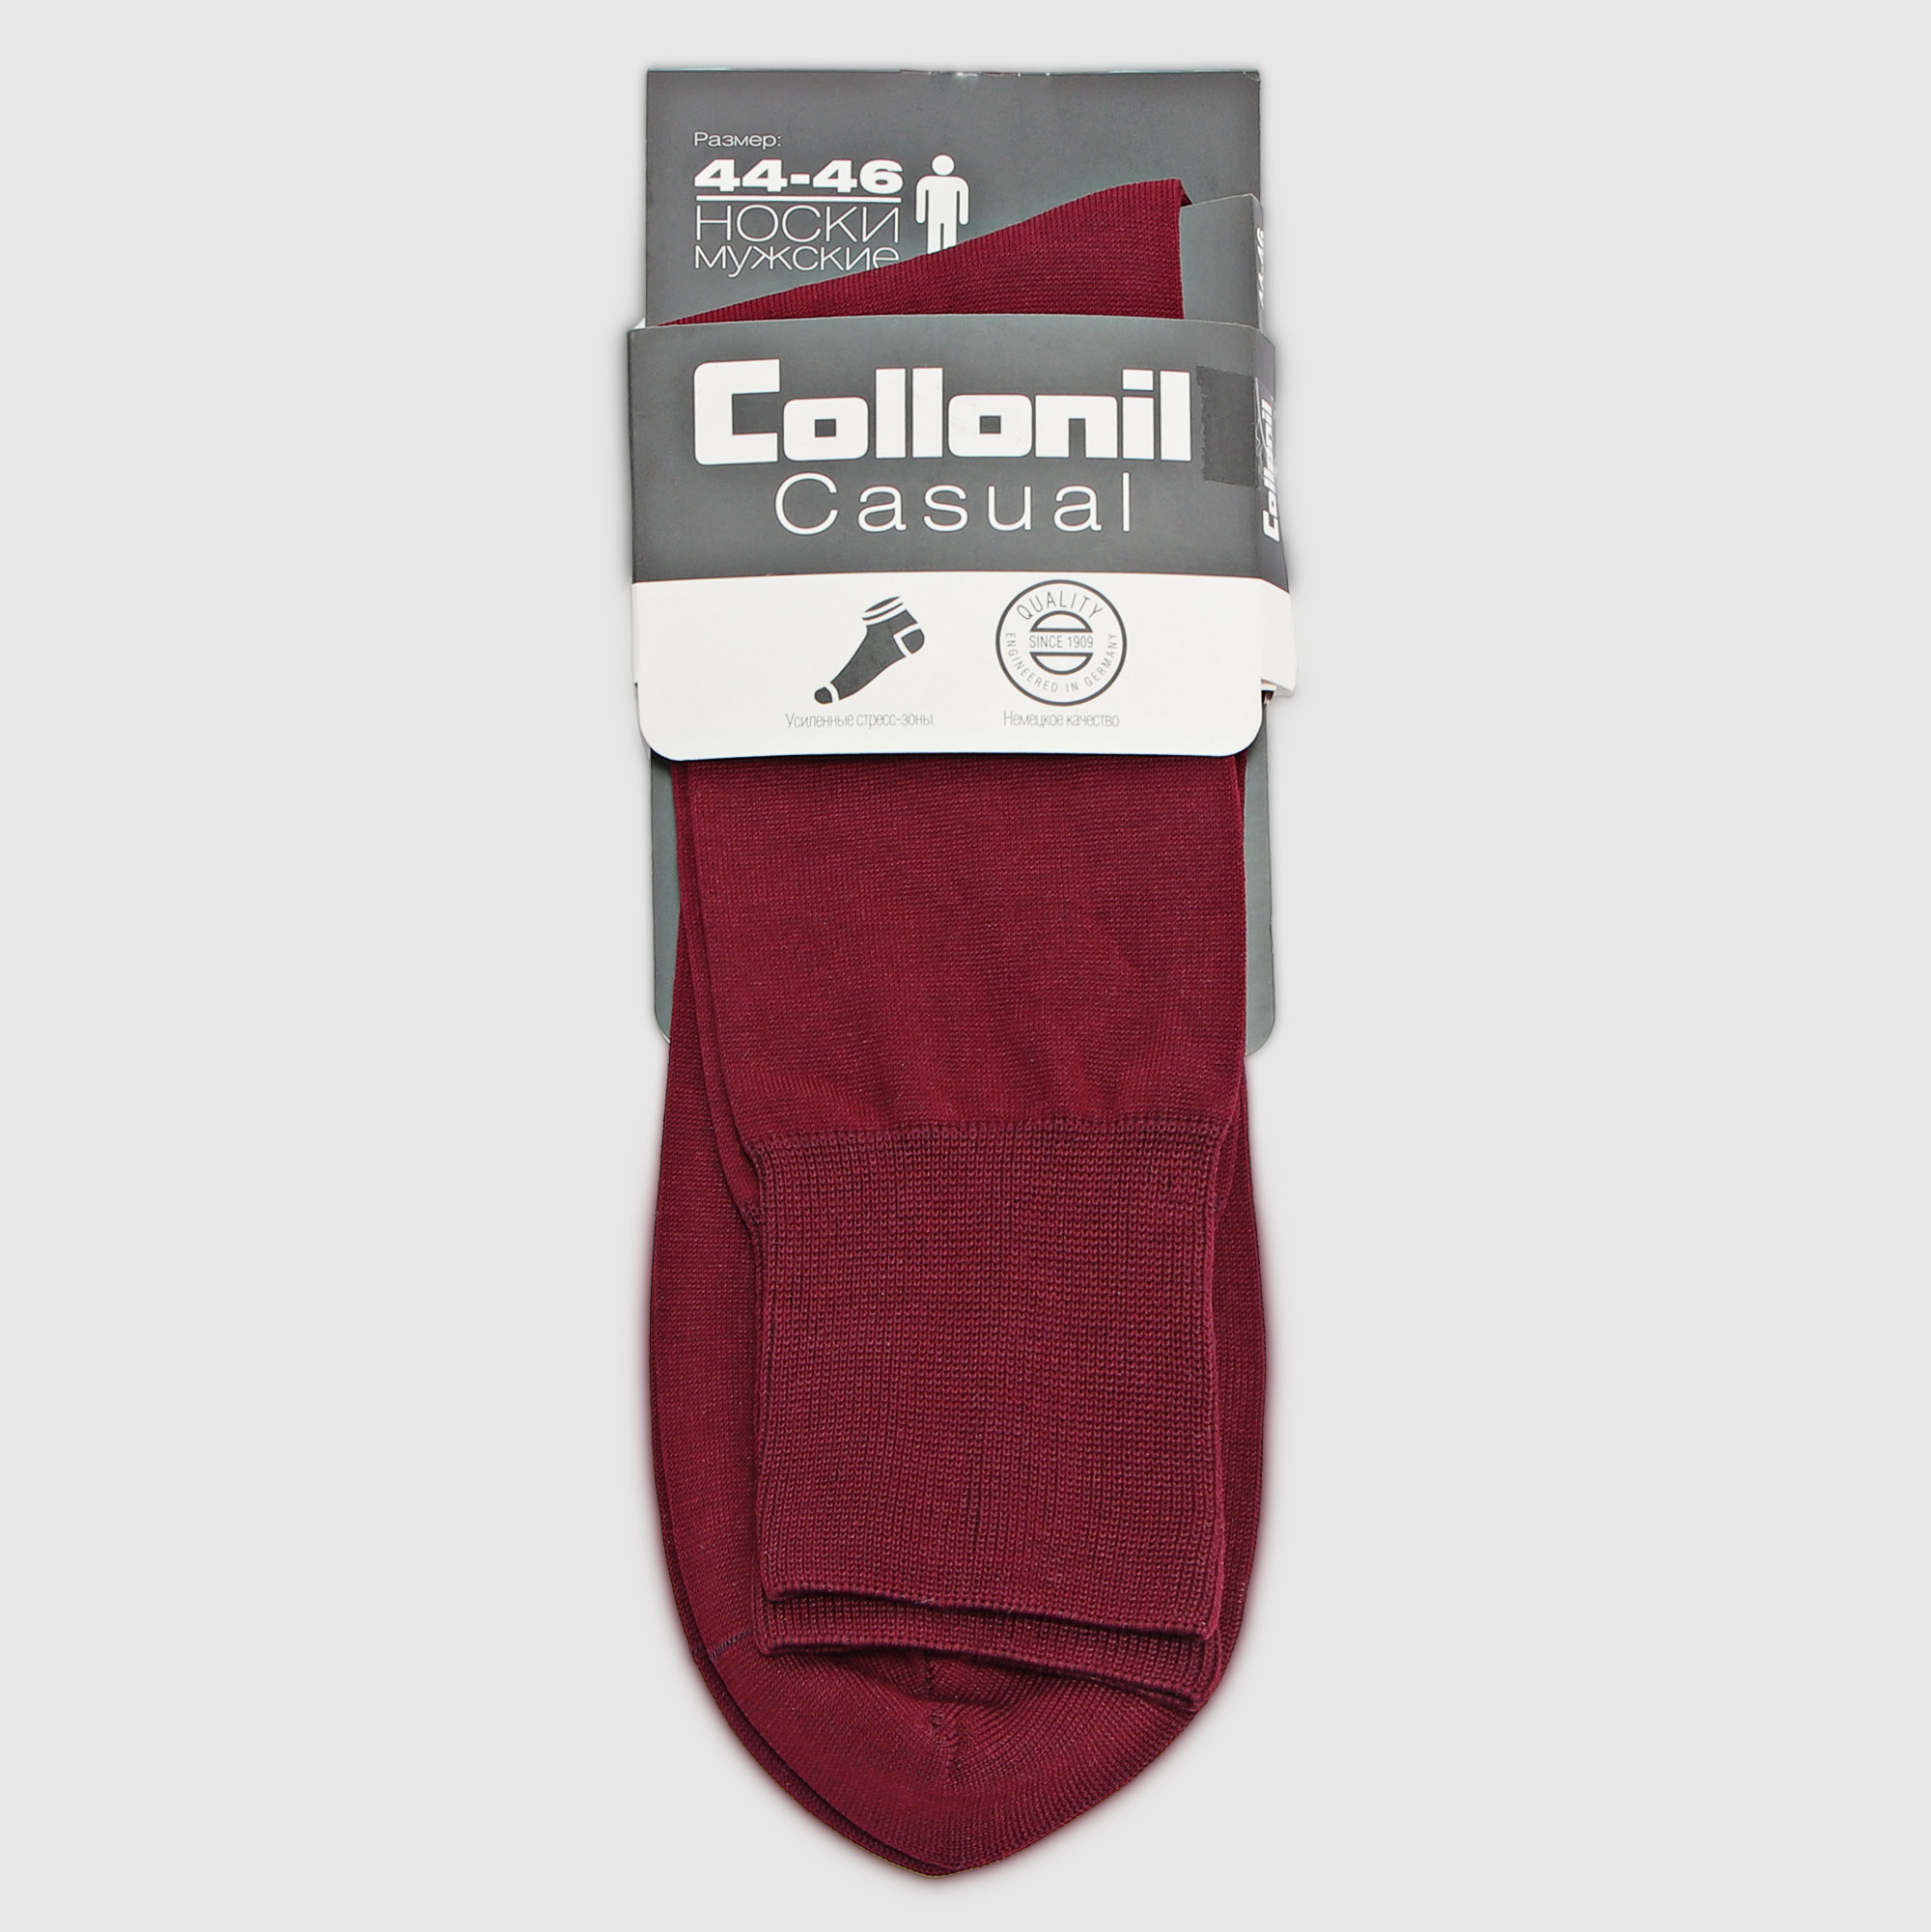 Мужские носки Collonil бордовые (2100574446), цвет бордовый, размер 44-46